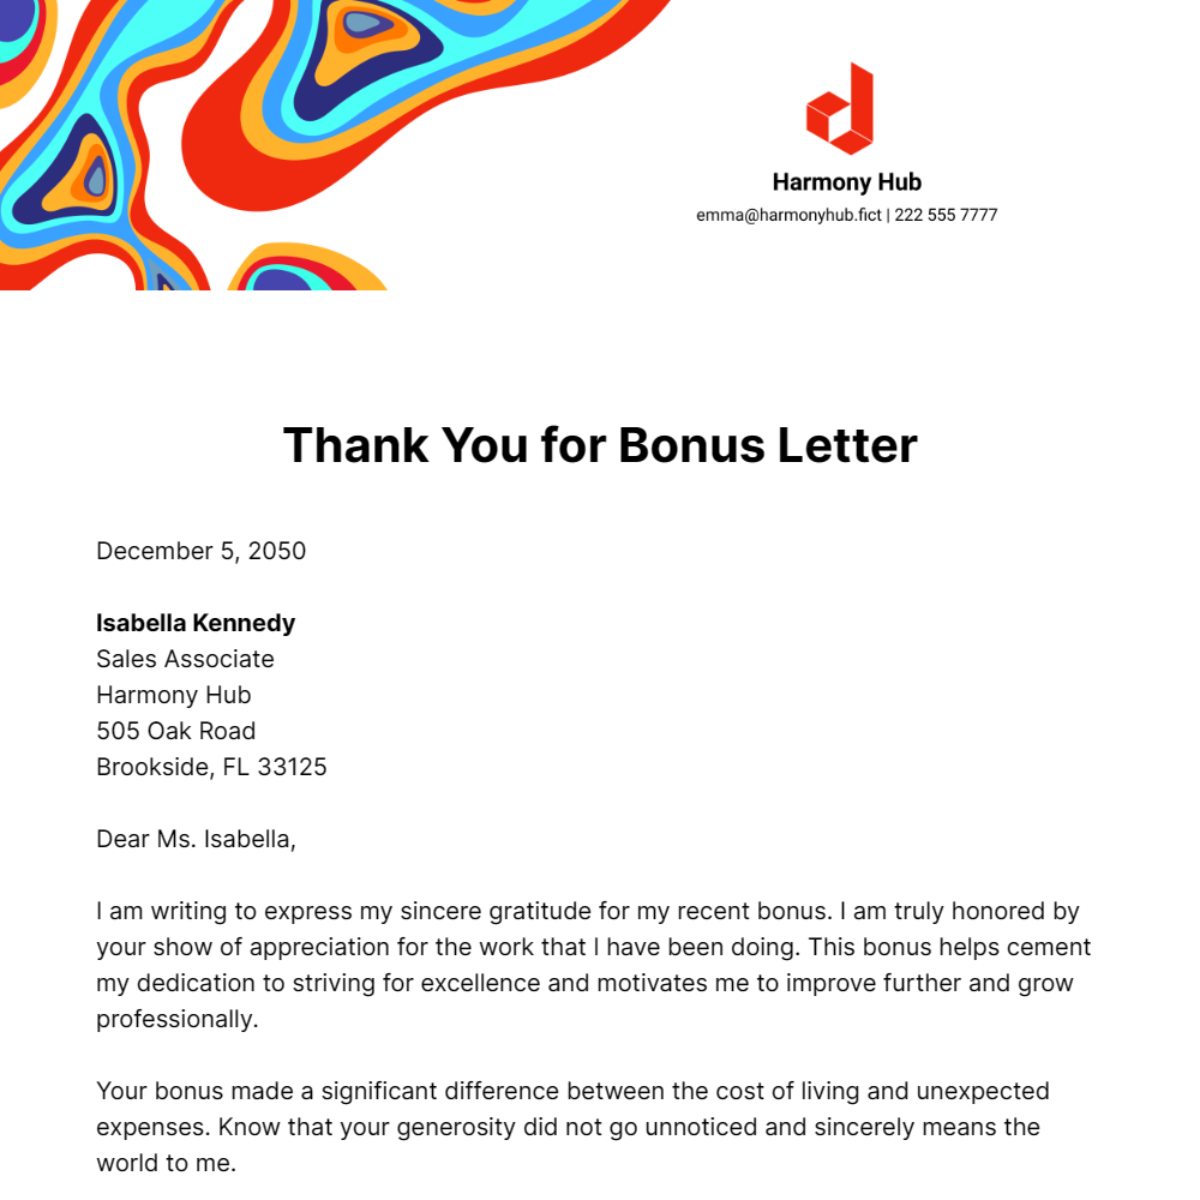 Thank you for Bonus Letter Template